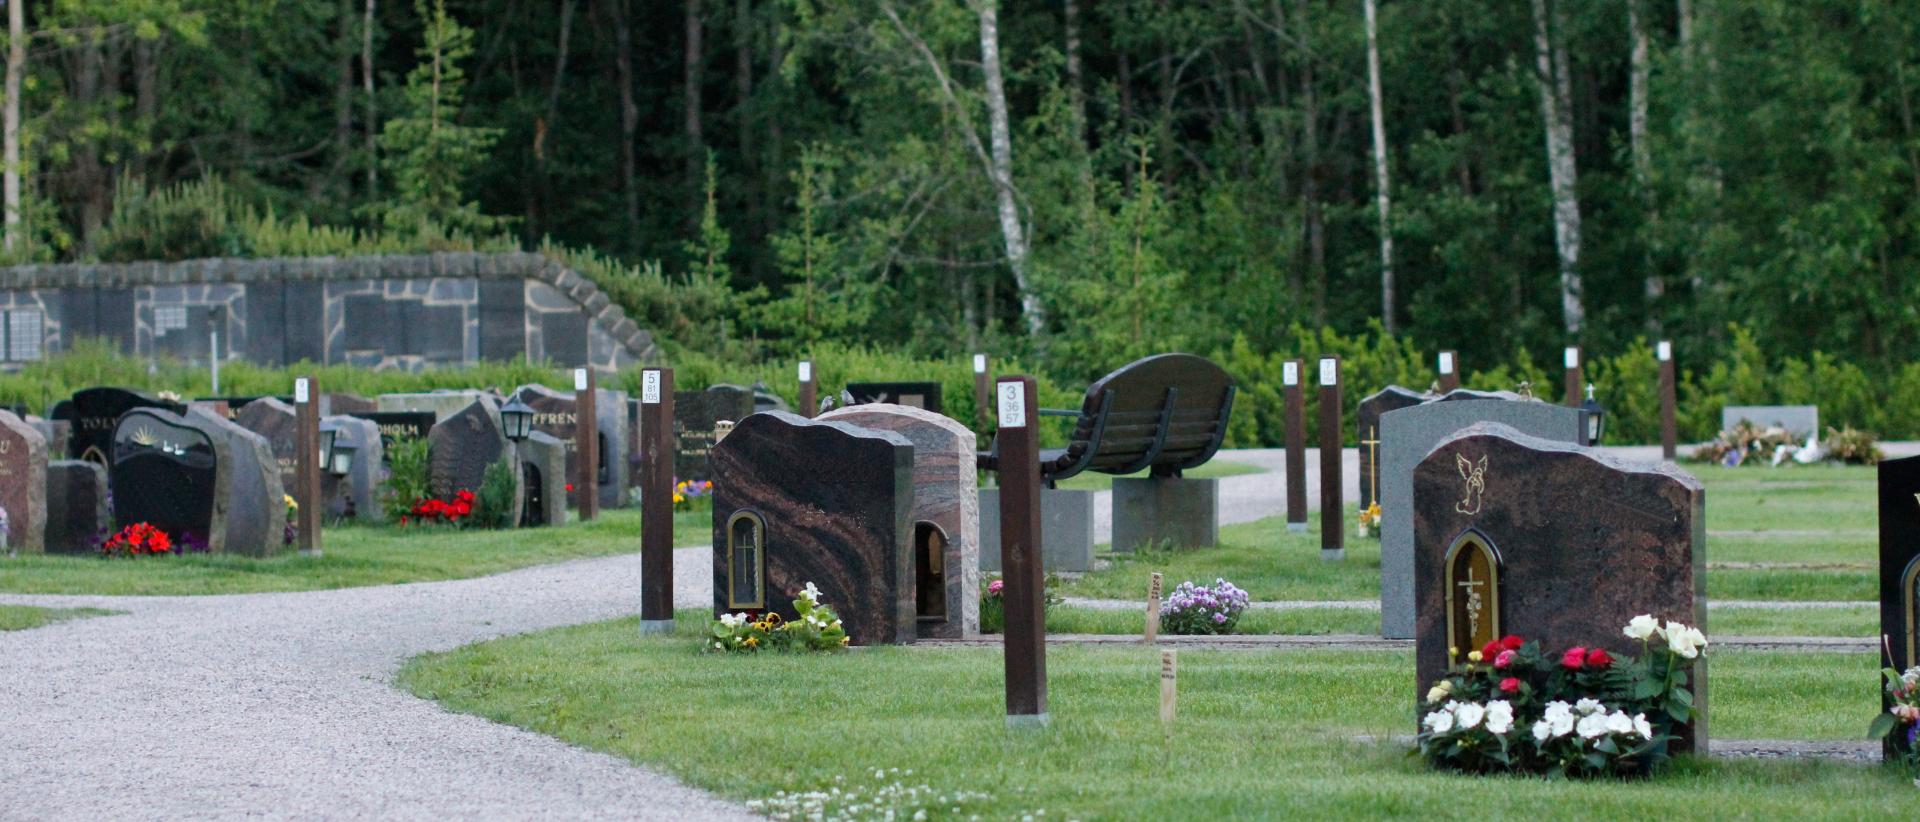 Uusi hautausmaan kortteli, jossa on vielä paljon tyhjiä hautapaikkoja. Hiekkatie kulkee korttelin läpi ja taustalla näkyy metsää sekä korttelin 10M muistomuuri.